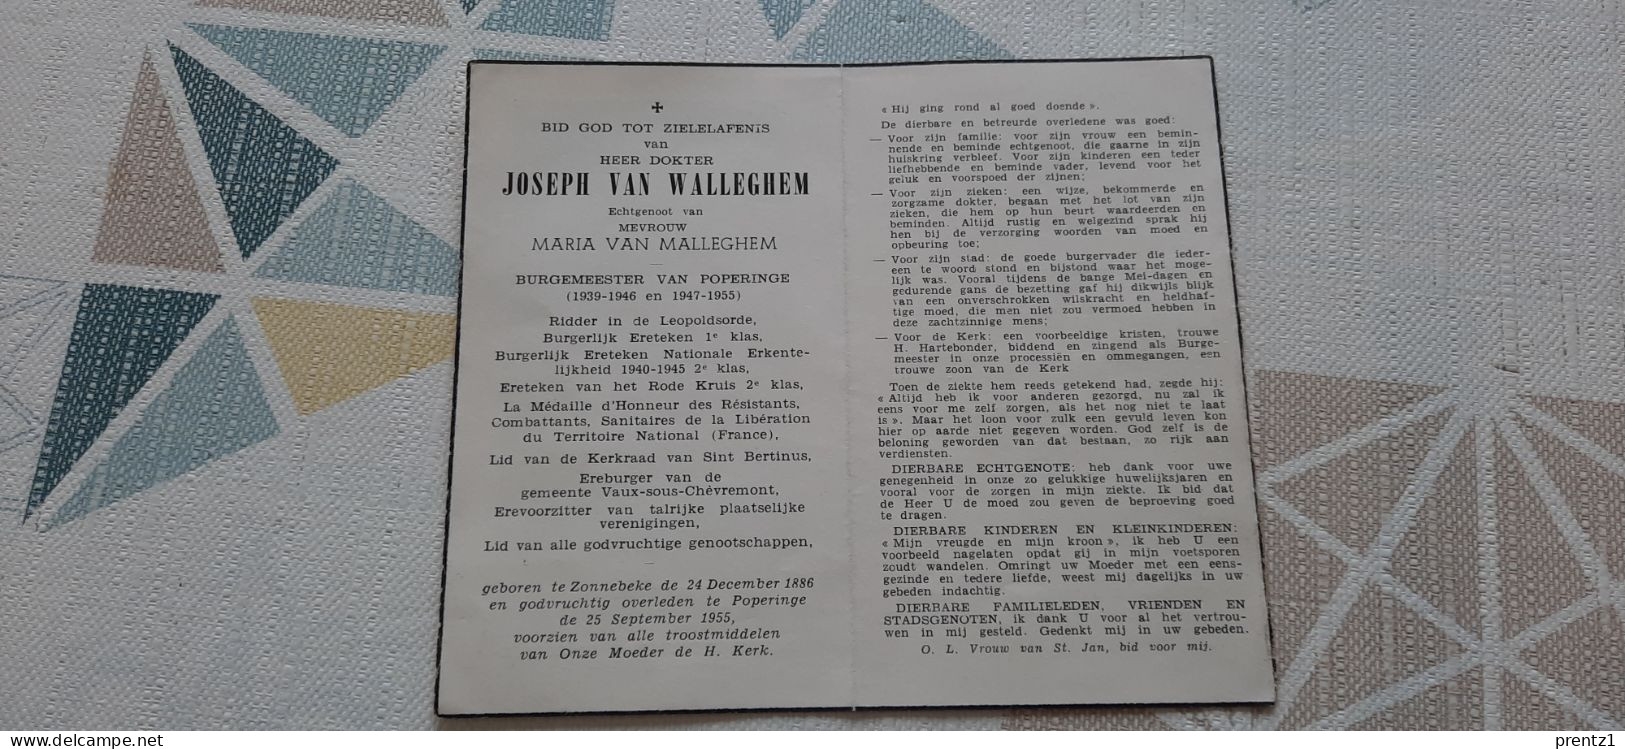 Joseph Van Walleghem Geb.Zonnebeke 1886- Getr. M. Van Malleghem - Burgemeester Poperinge- Gest.25-09/1955 - Devotion Images